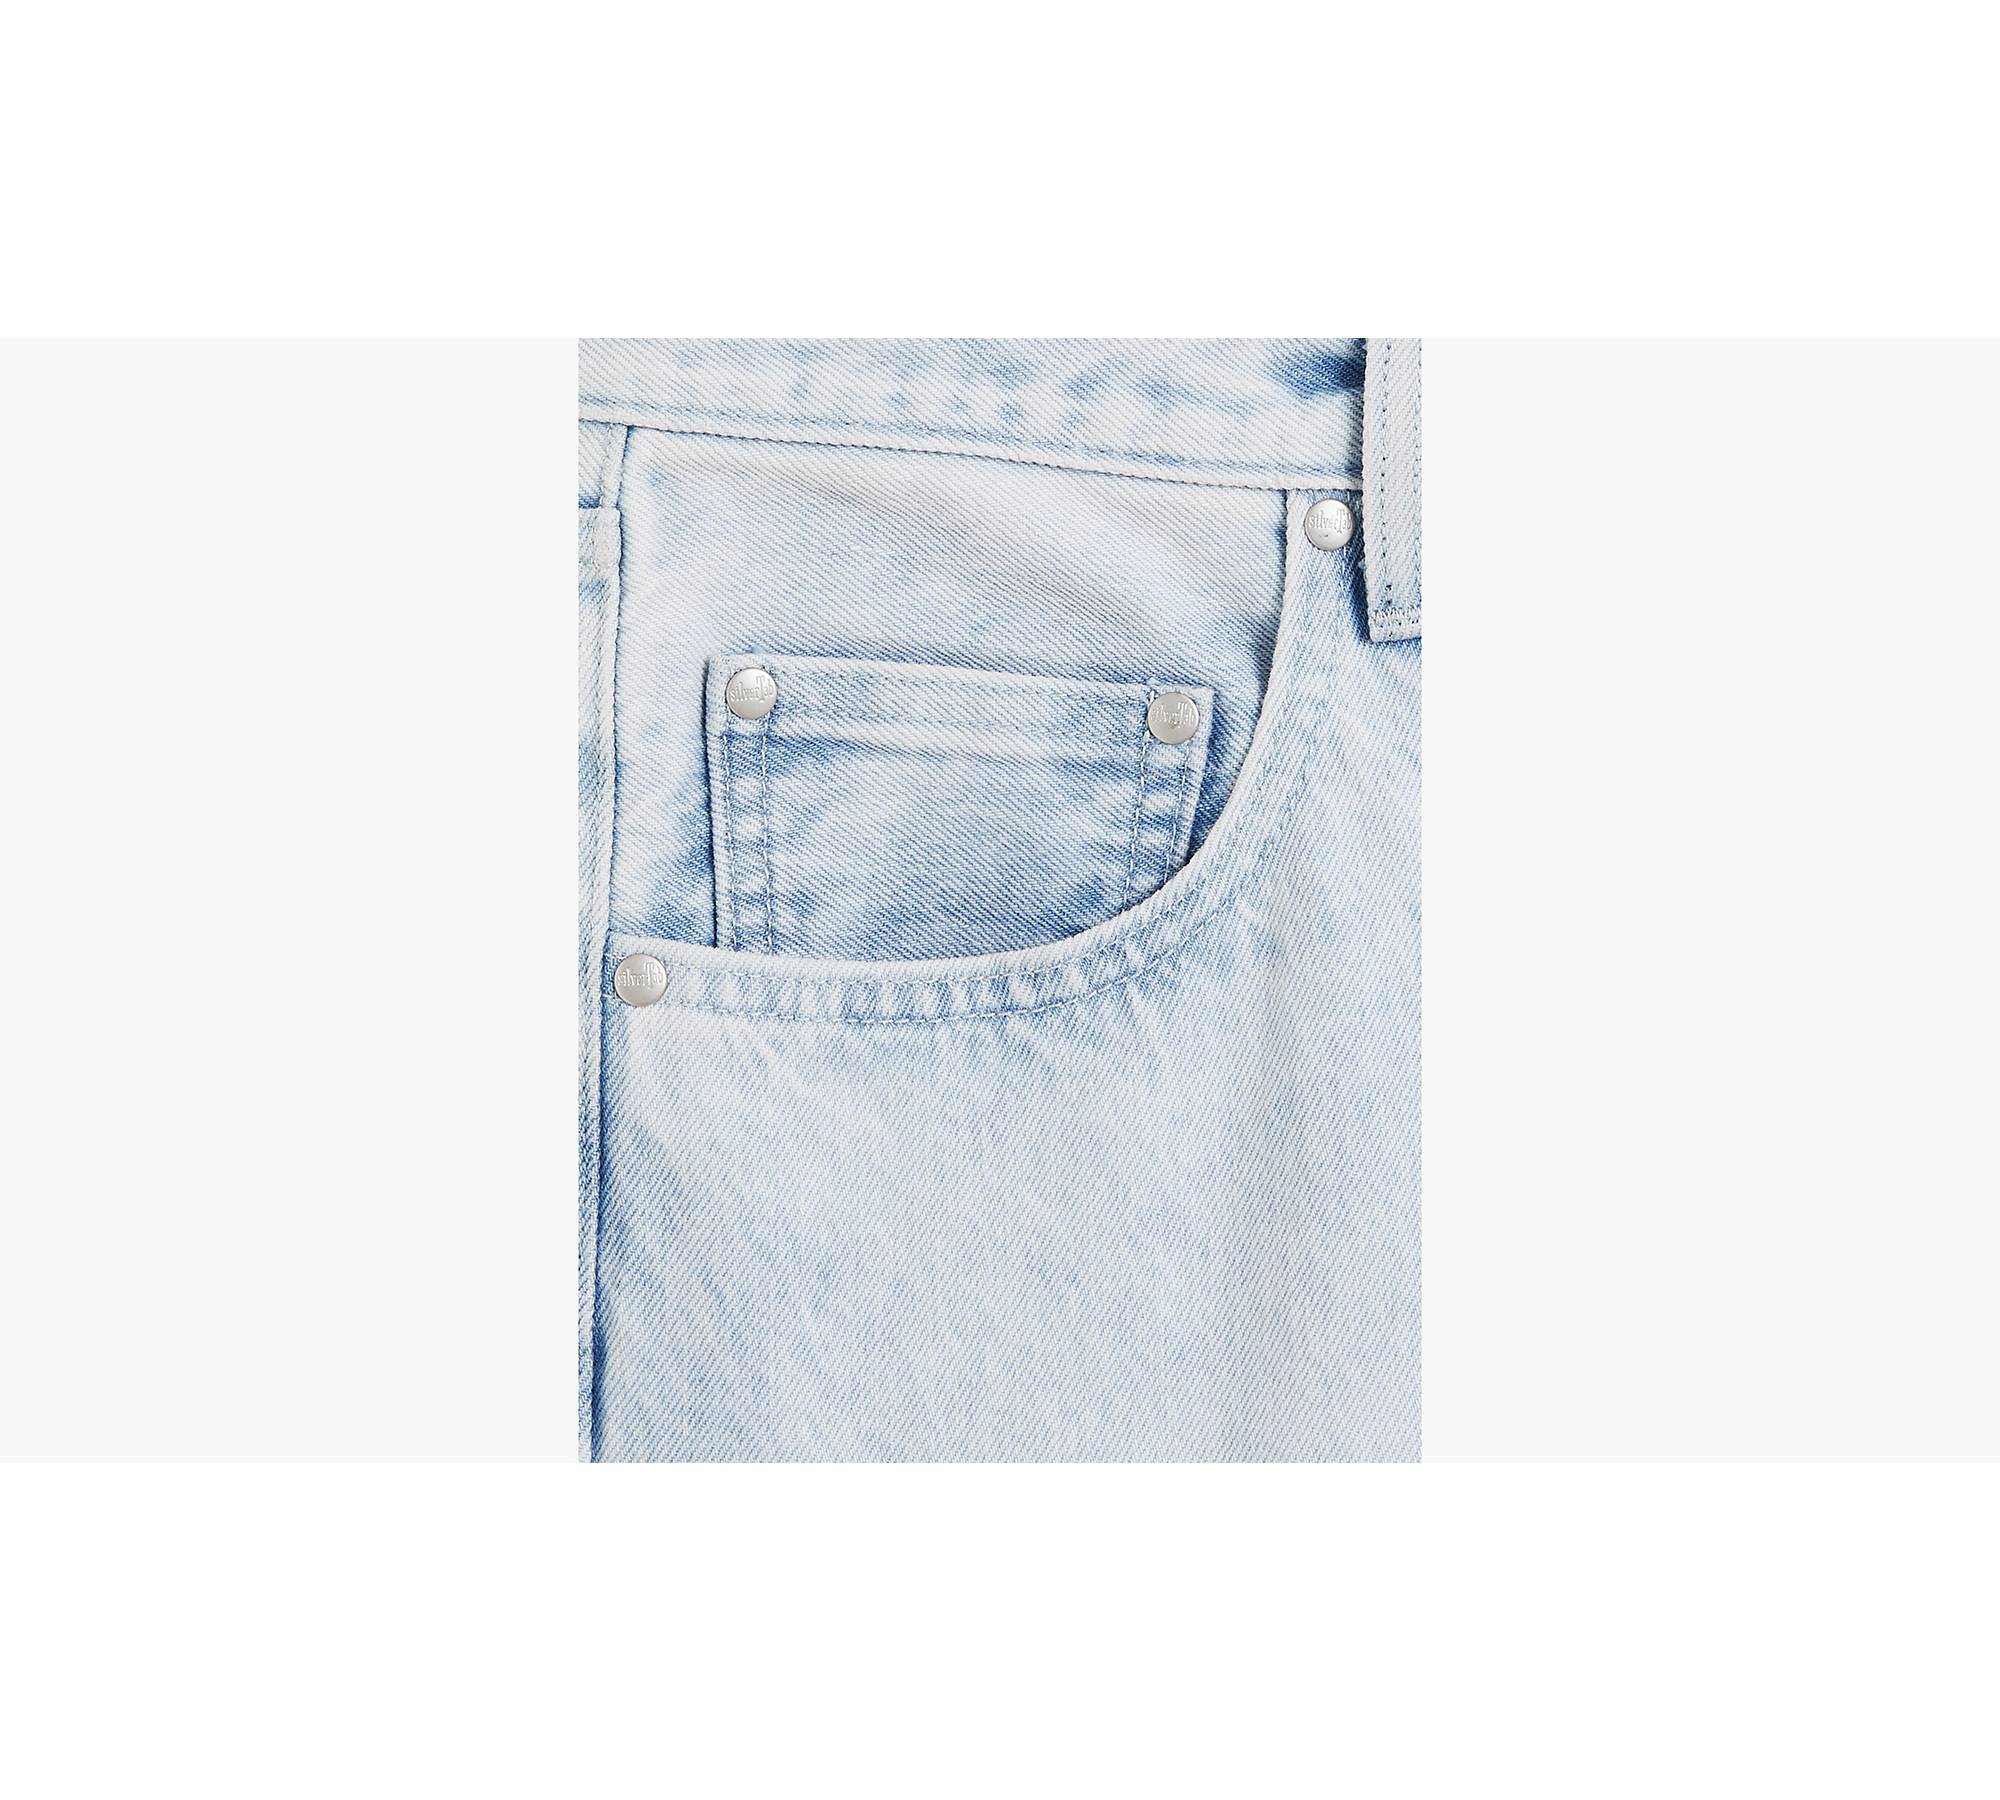 Loose Fit Men's Jeans - Light Wash | Levi's® US